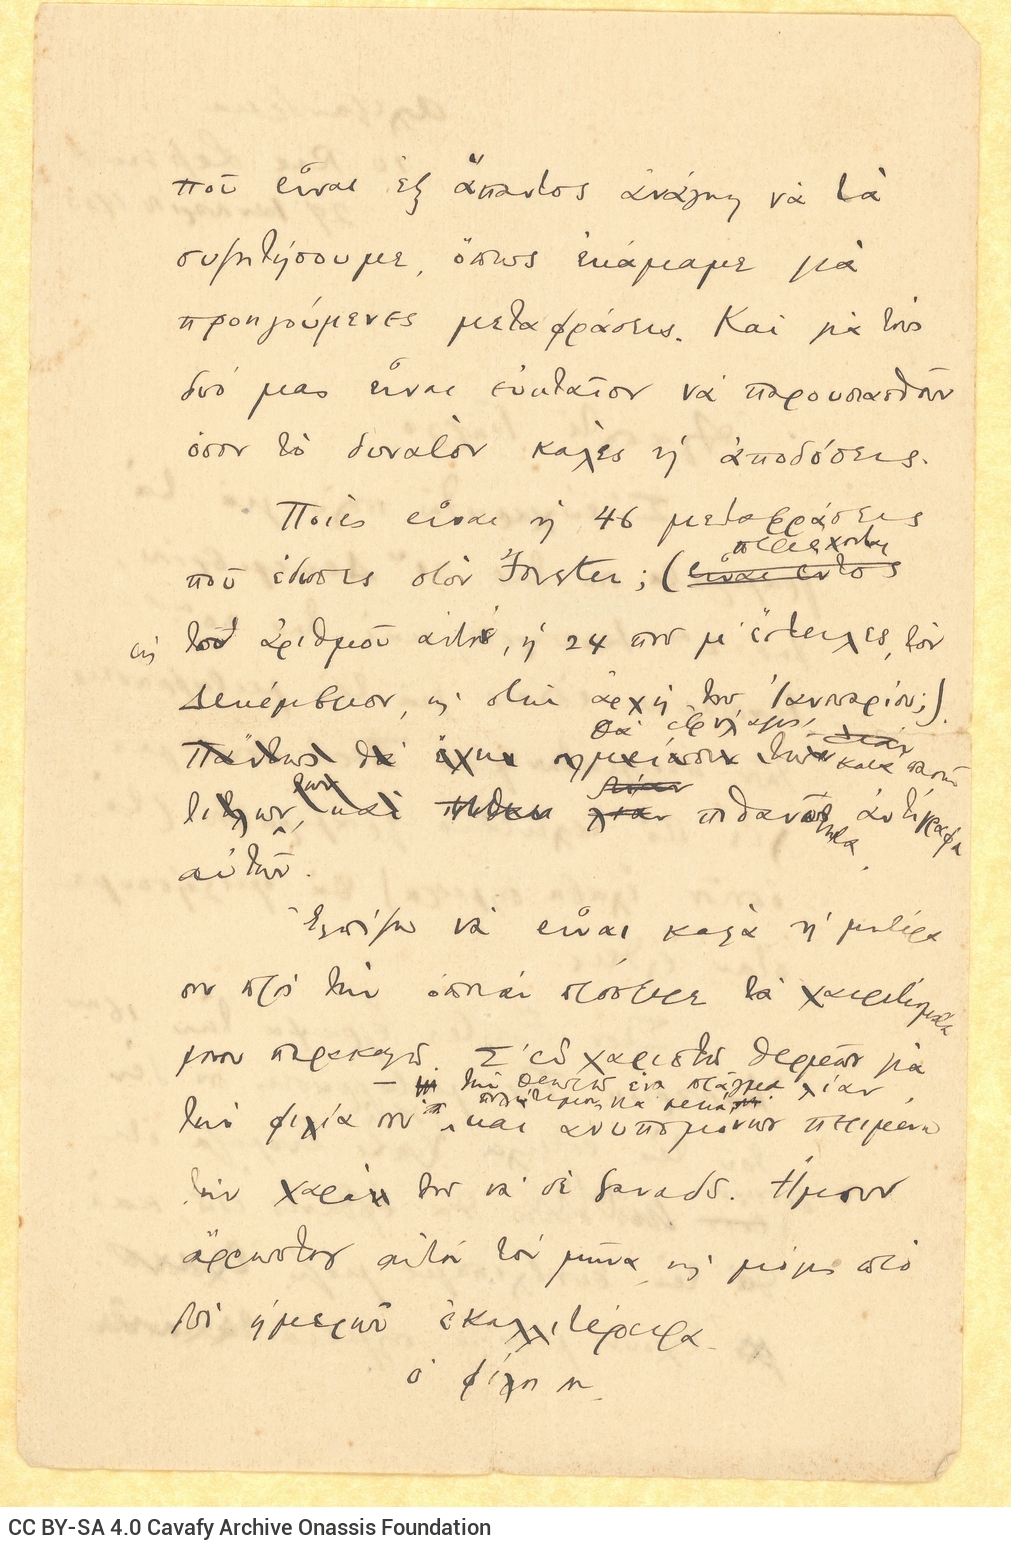 Χειρόγραφο σχέδιο επιστολής του Καβάφη προς τον Γεώργιο Βαλασόπουλ�